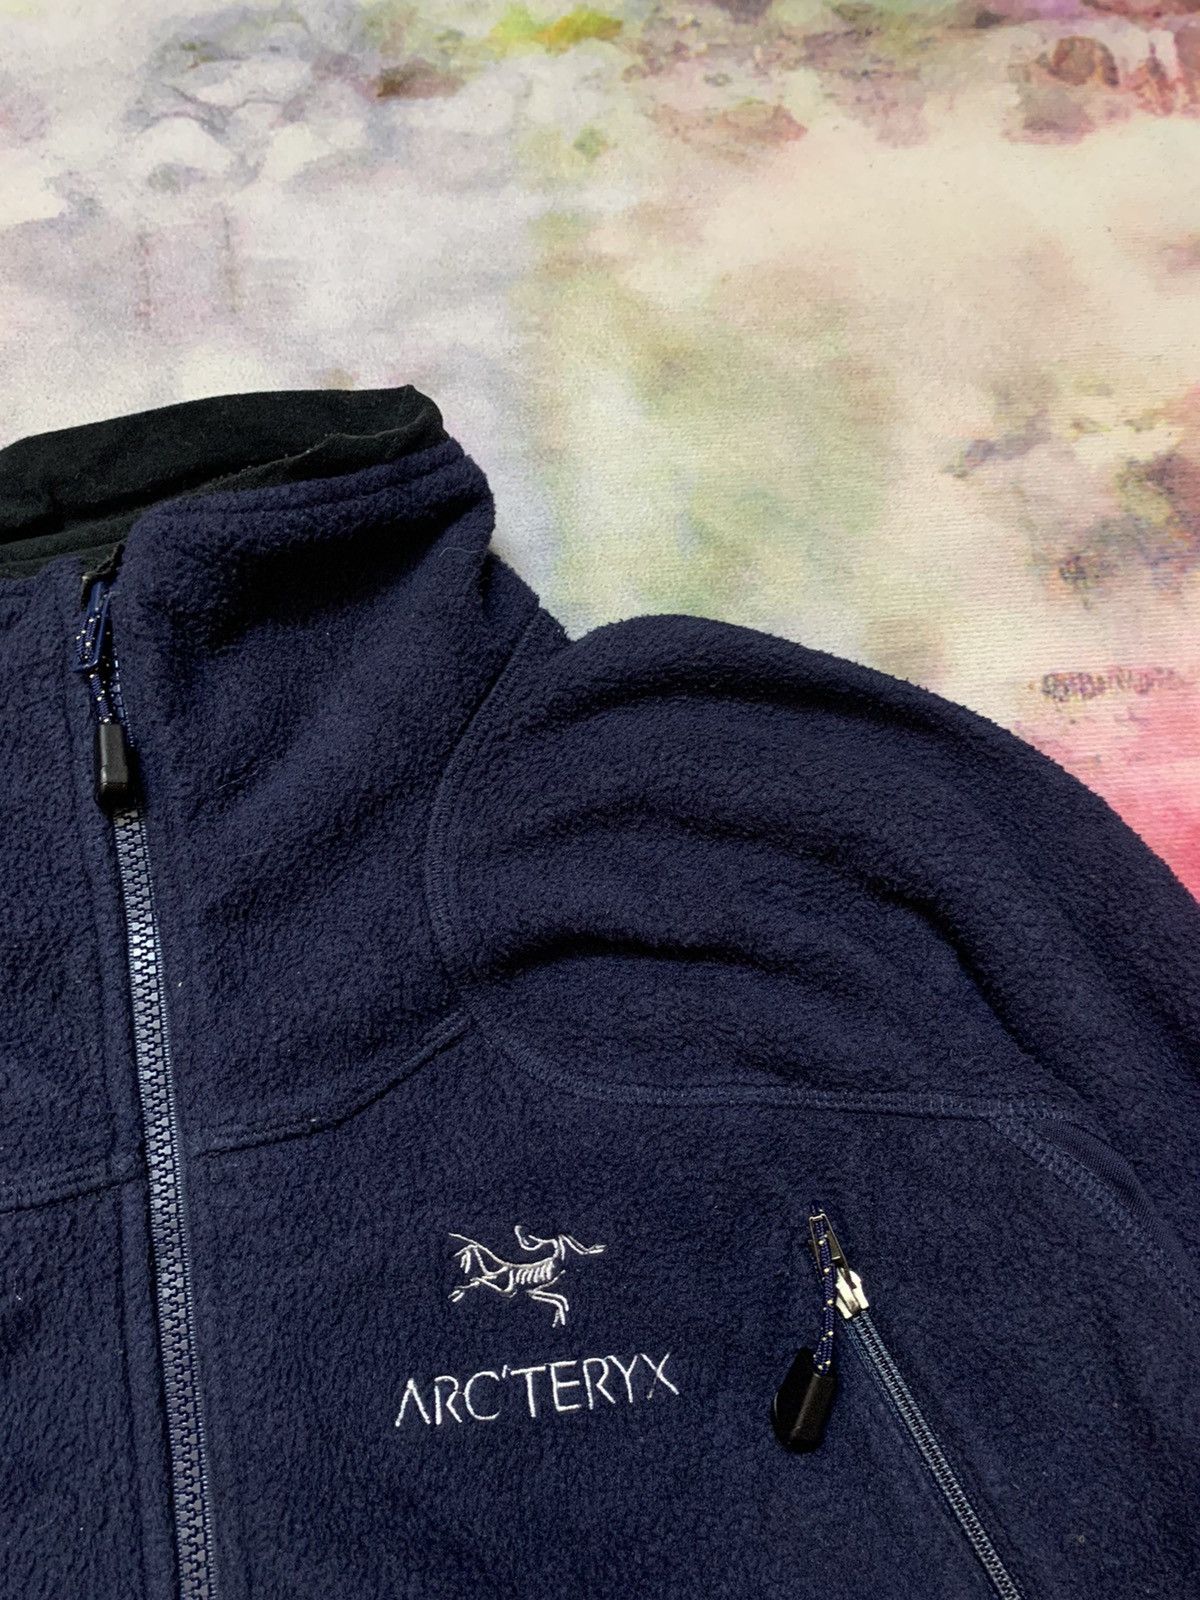 Vintage Arcteryx Polartec Fleece Jacket - 9